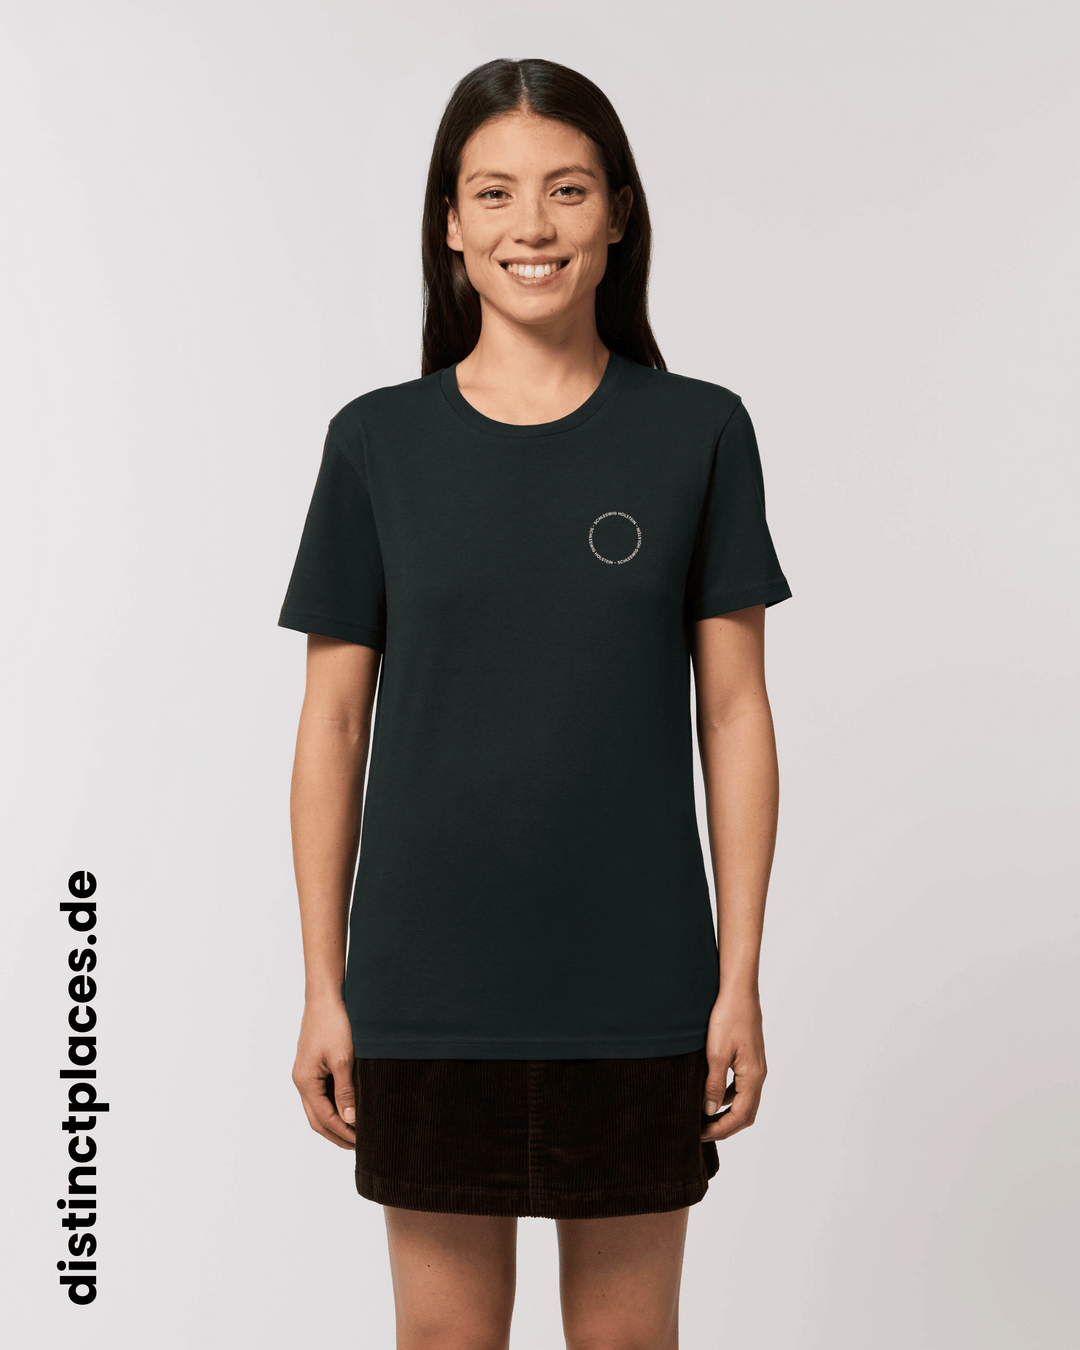 Frau von vorne trägt schwarzes fairtrade, vegan und bio-baumwoll T-Shirt mit einem minimalistischem weißen Logo, beziehungsweise Schriftzug für Schleswig-Holstein